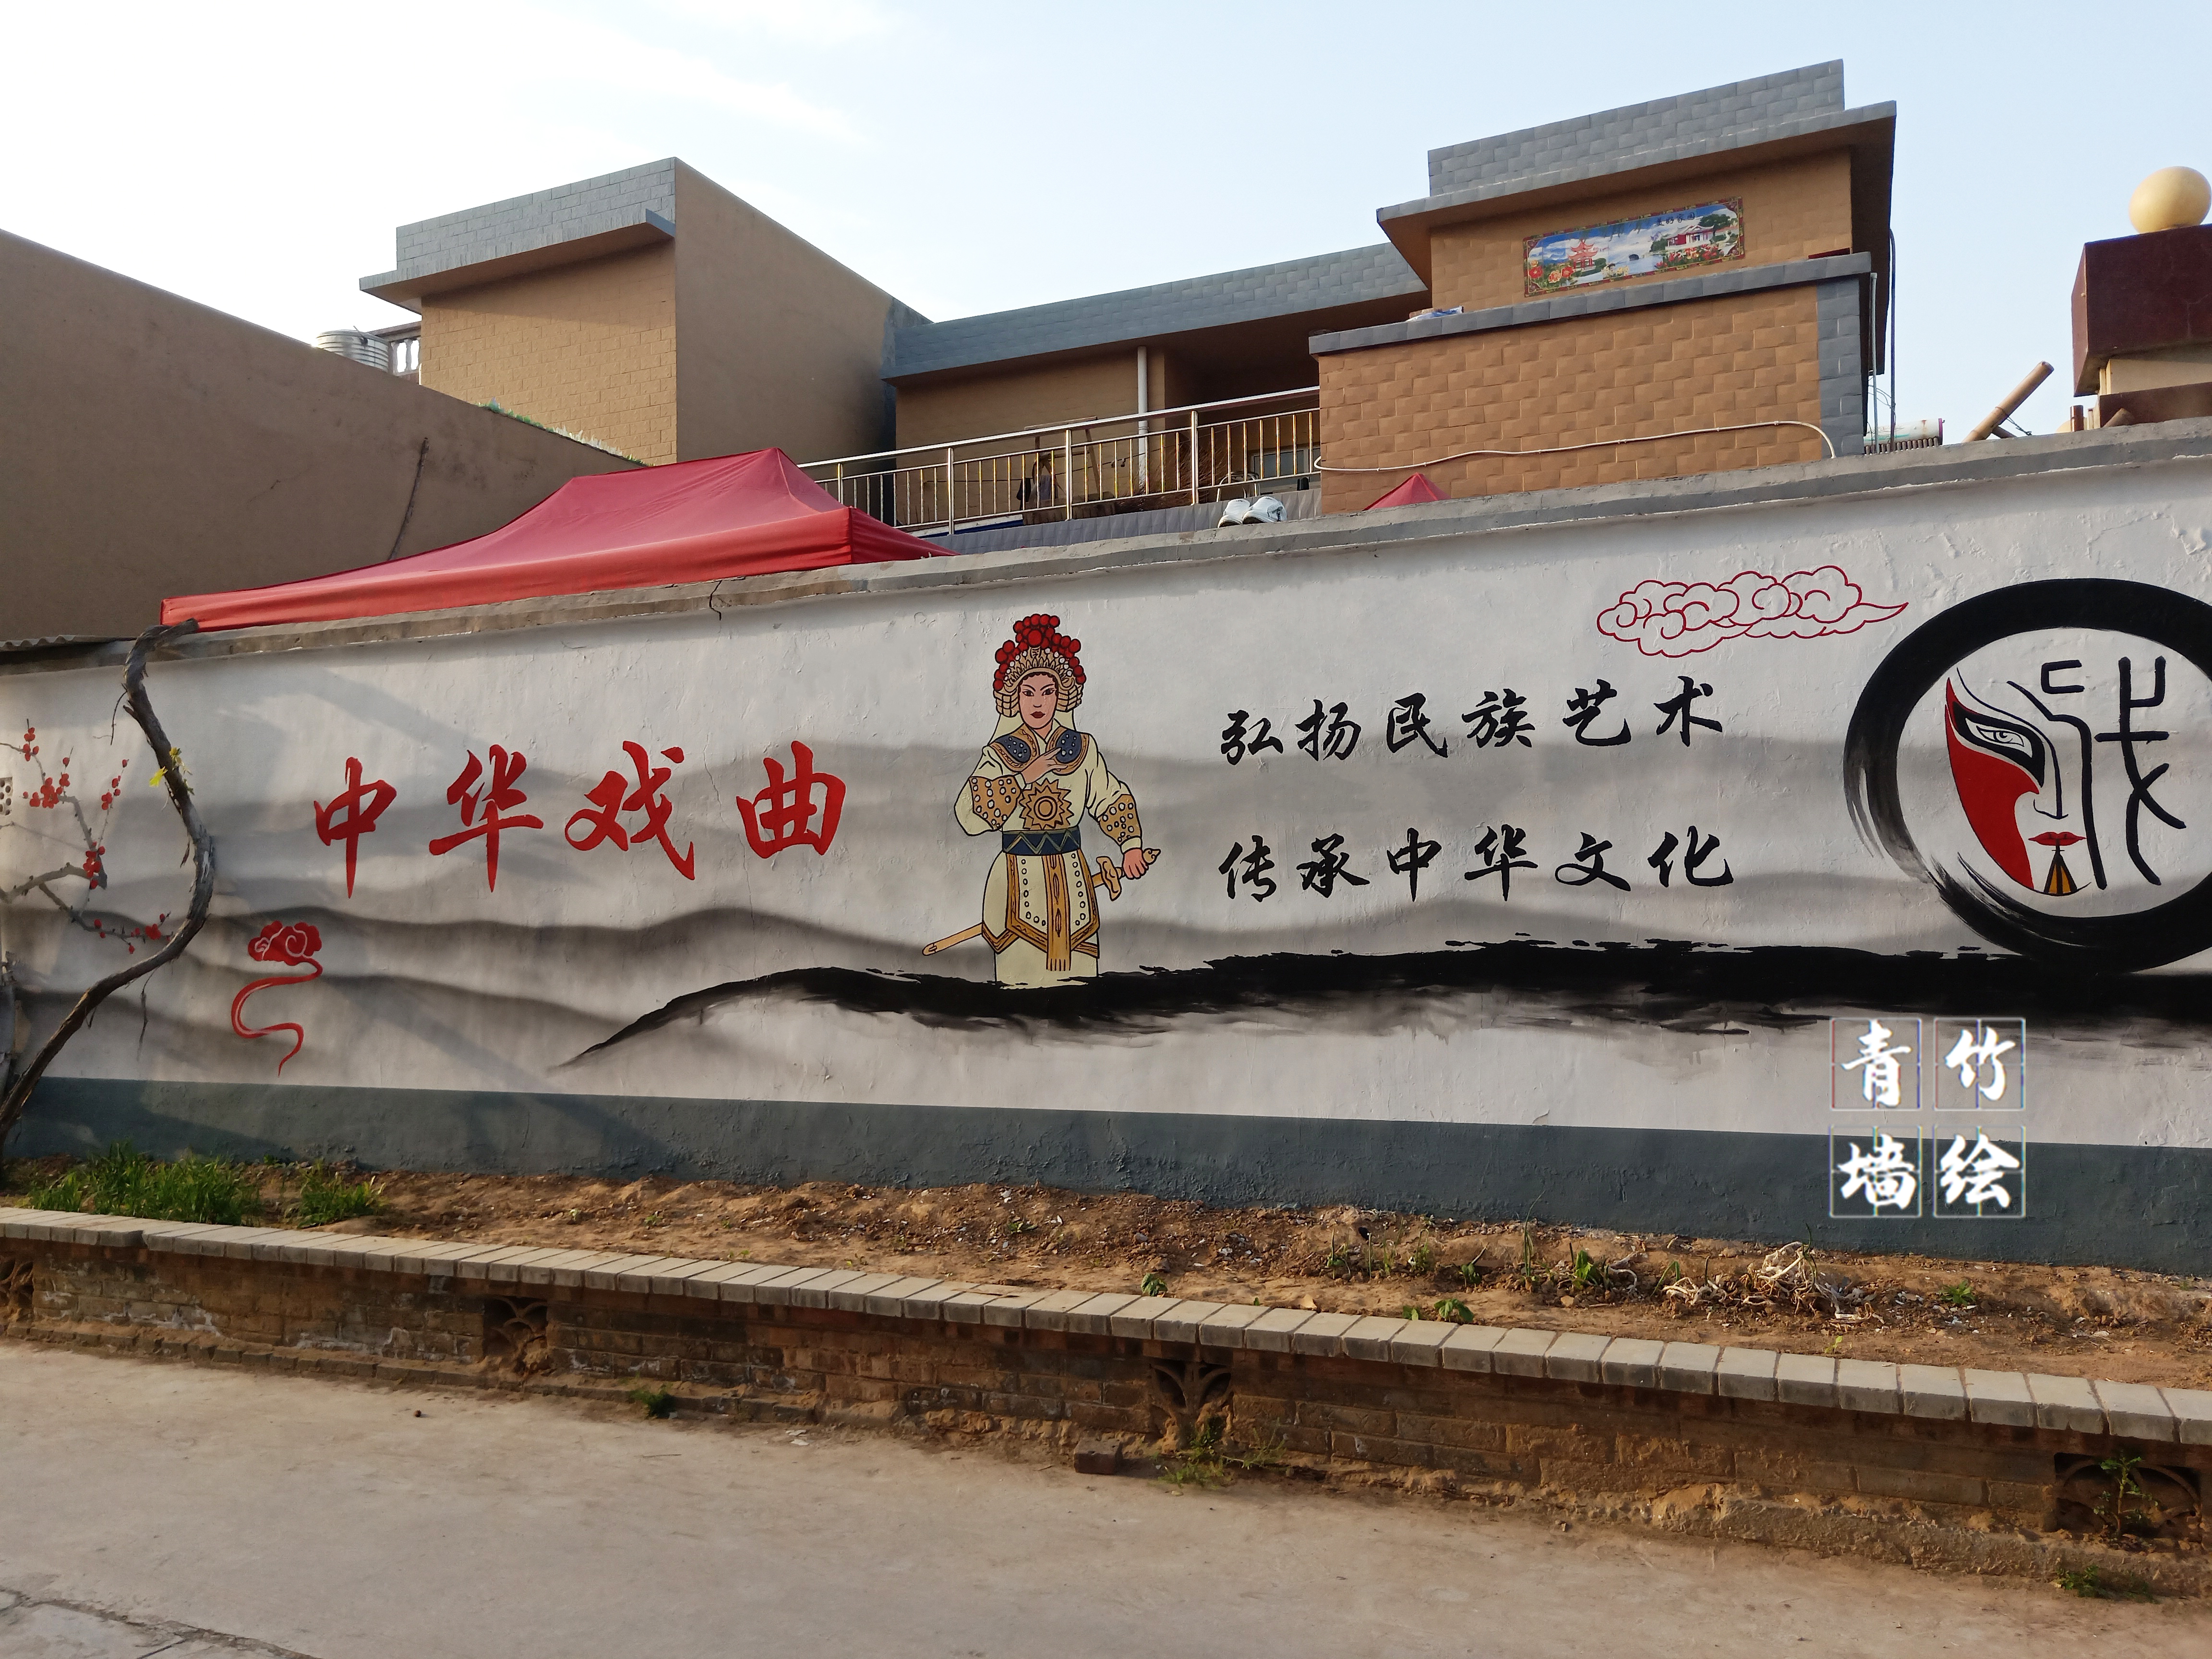 中国戏曲墙绘图片